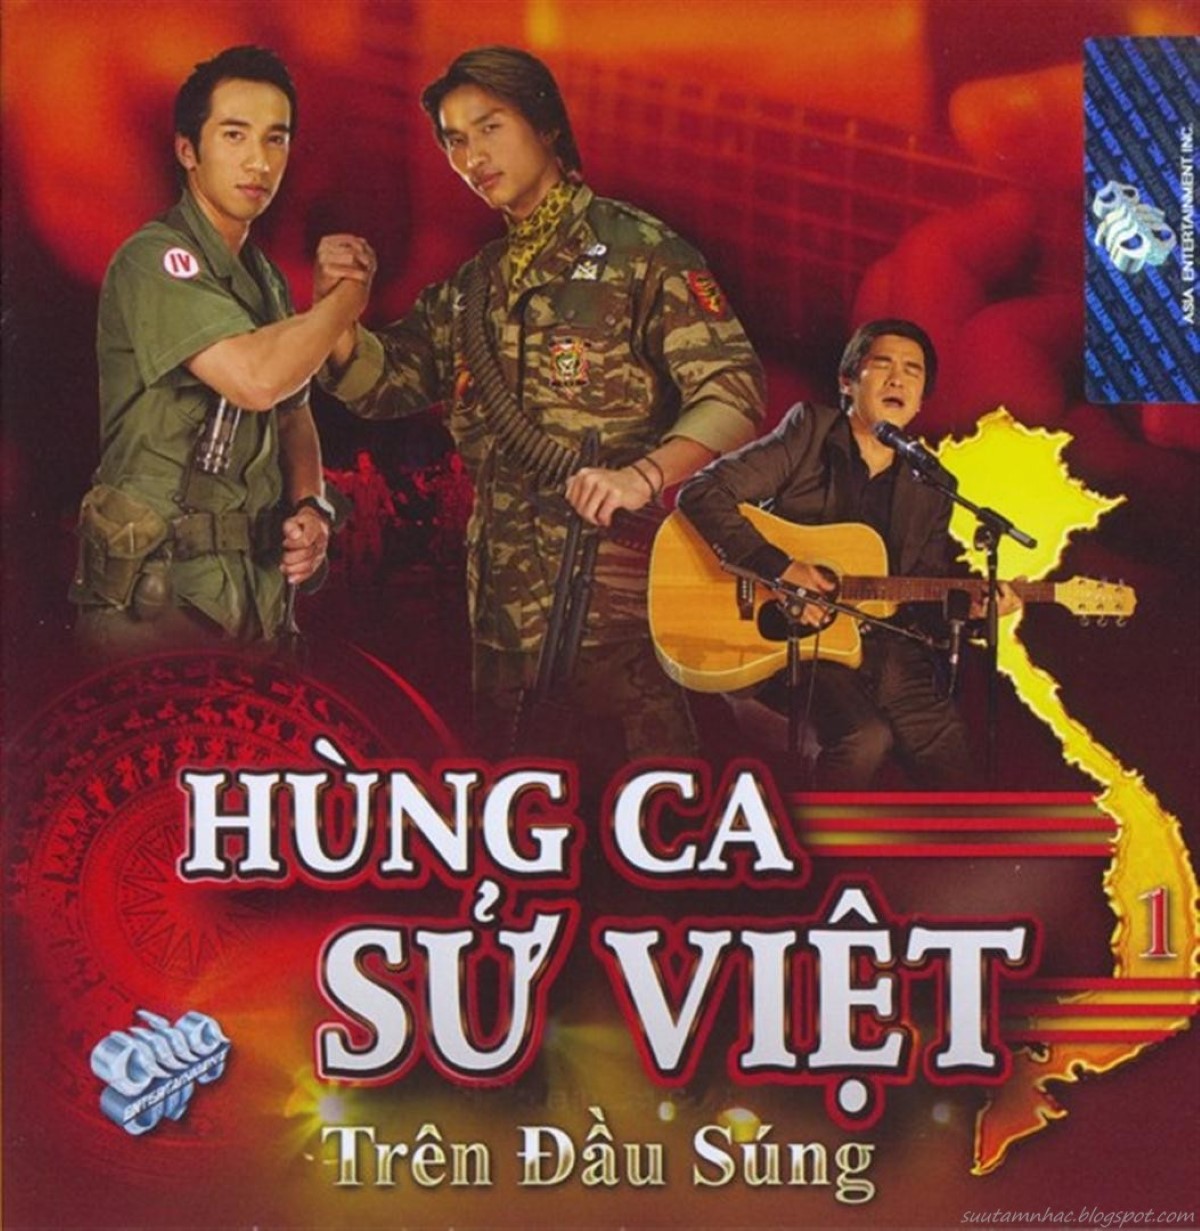 Hùng Ca Sử Việt - Thề Không Phản Bội Quên Hương